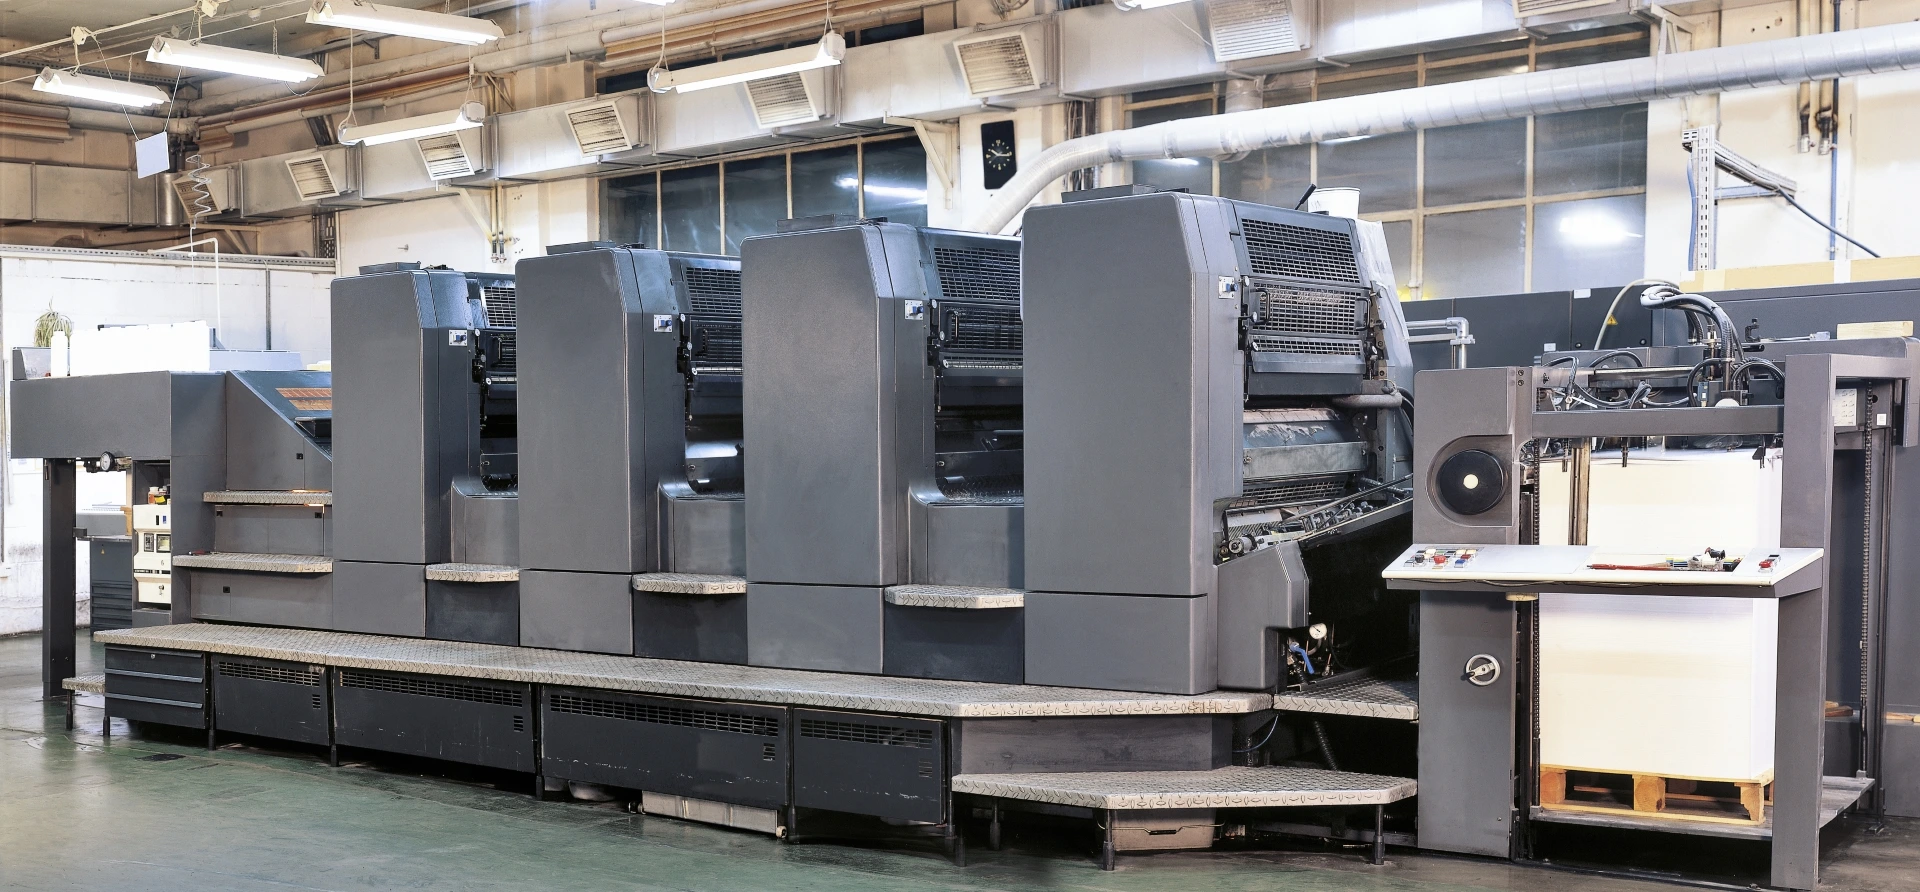 Imprentas en ciudad de méxico: grandes máquinas que se usaban para la imprenta